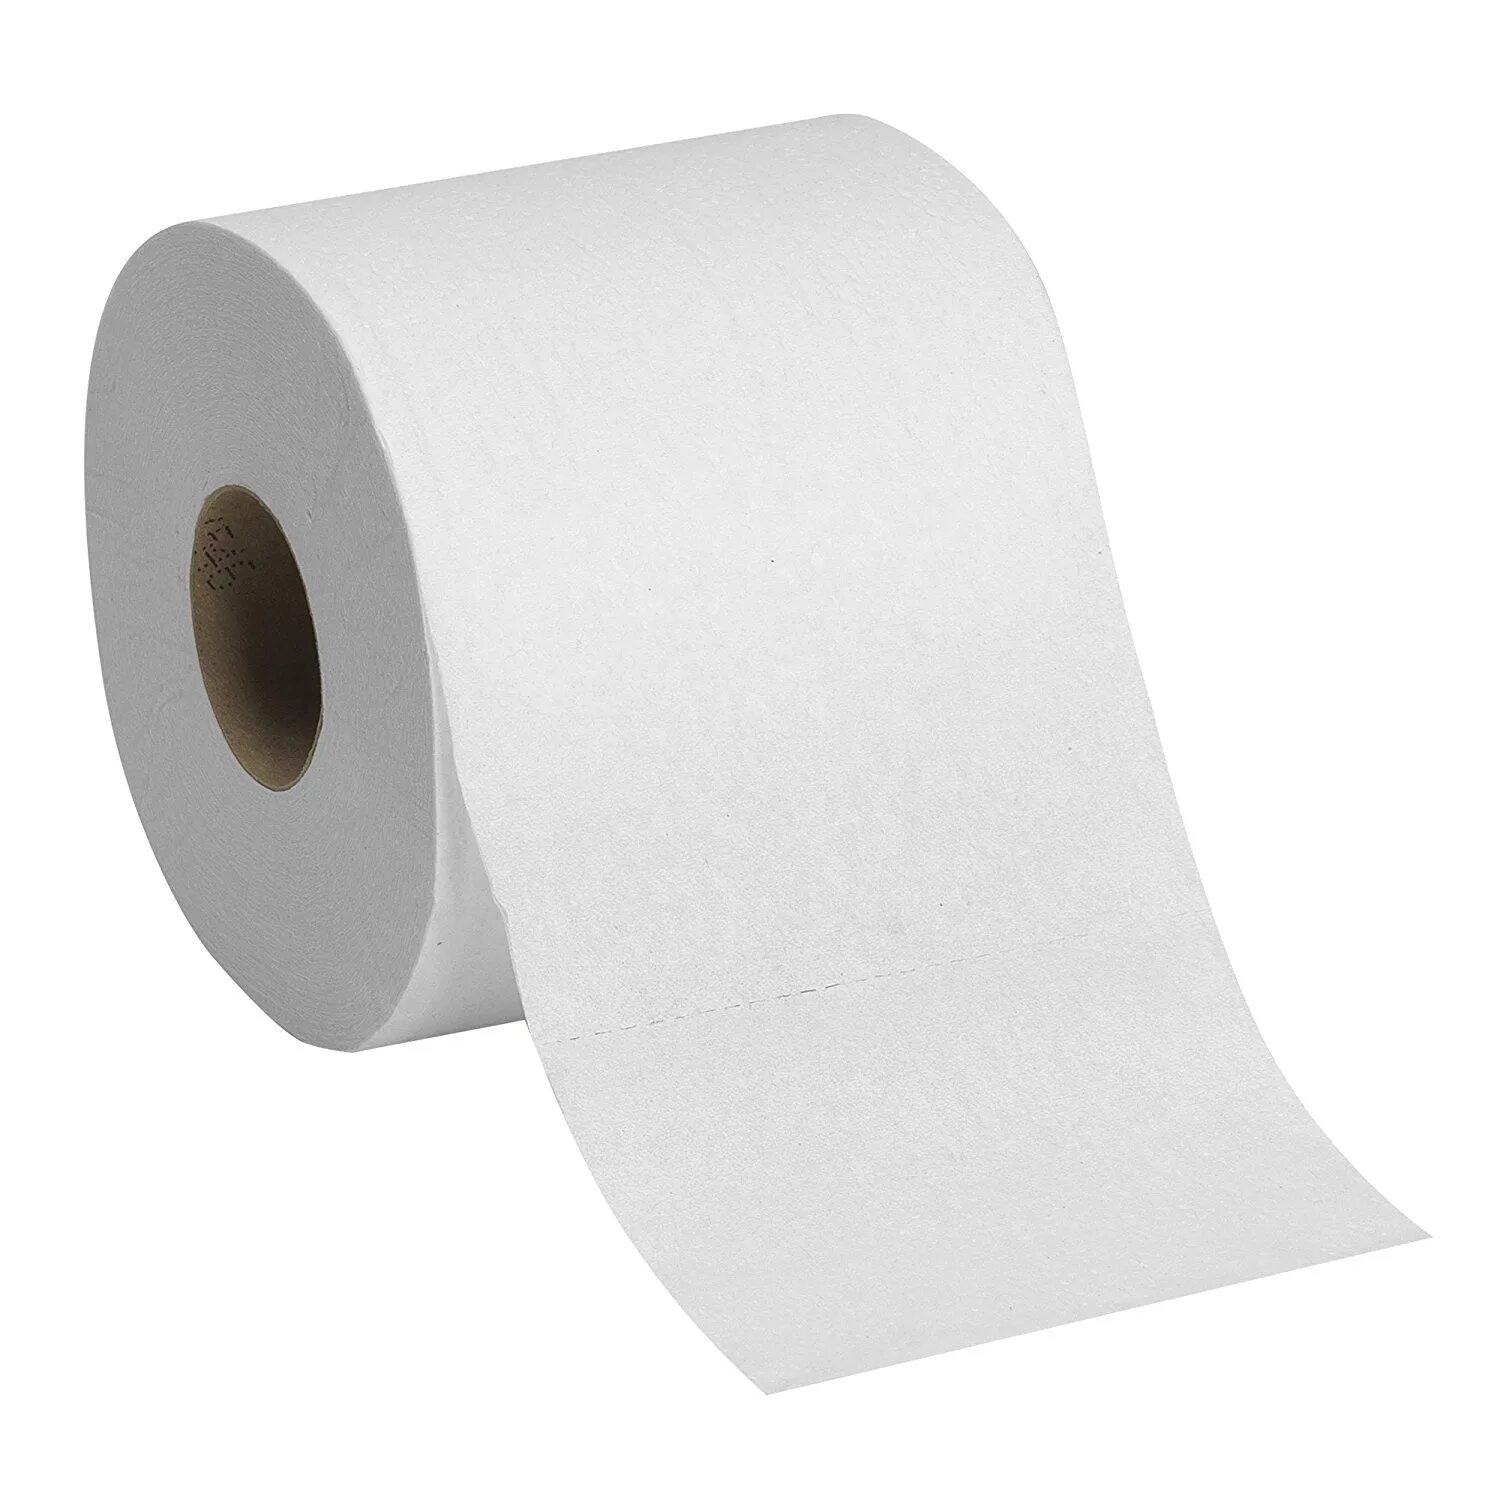 Дешевая бумага. Рулон бумаги. Туалетная бумага. Рулон белой бумаги. Рулон белой туалетной бумаги.